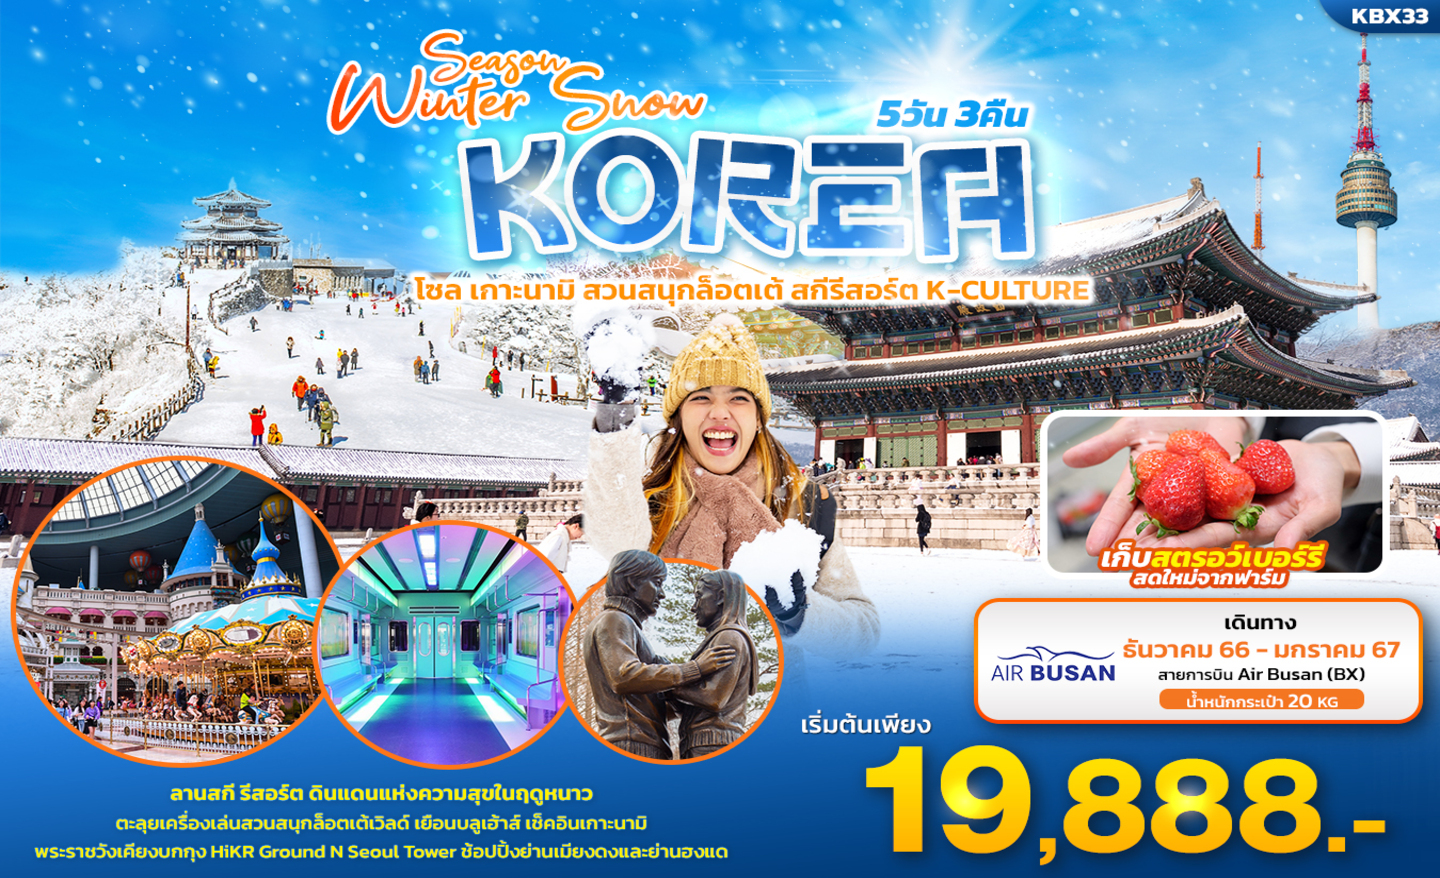 ทัวร์เกาหลี Season Winter Snow โซล เกาะนามิ สวนสนุกล็อตเต้ สกีรีสอร์ต K-Culture (ธ.ค.66-ม.ค.67)